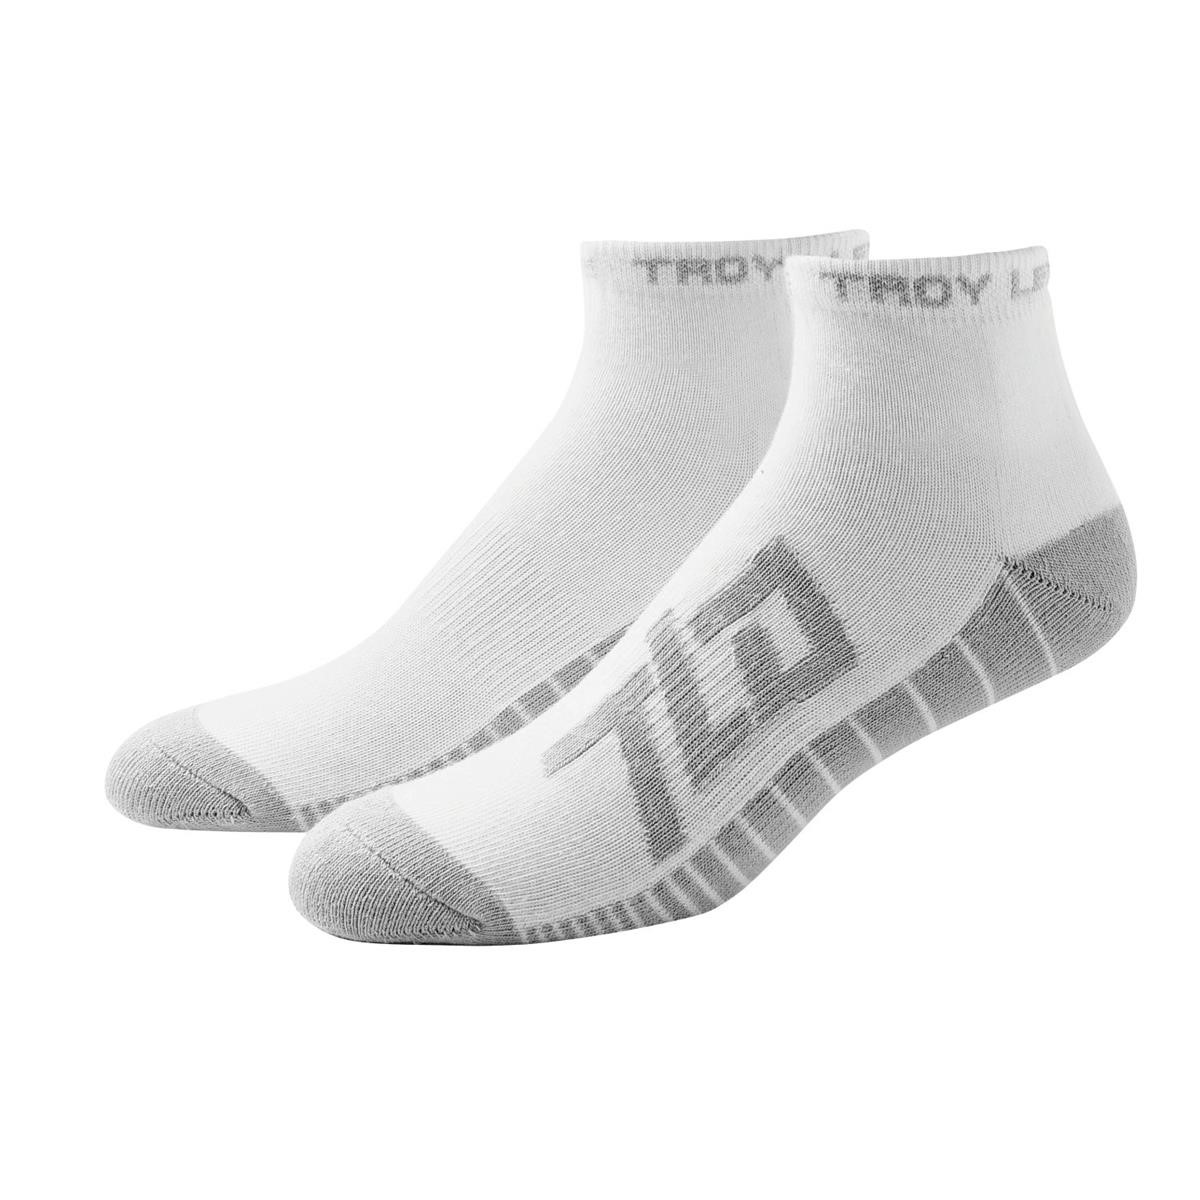 Troy Lee Designs Socken Factory Quarter Weiß, 3er Pack